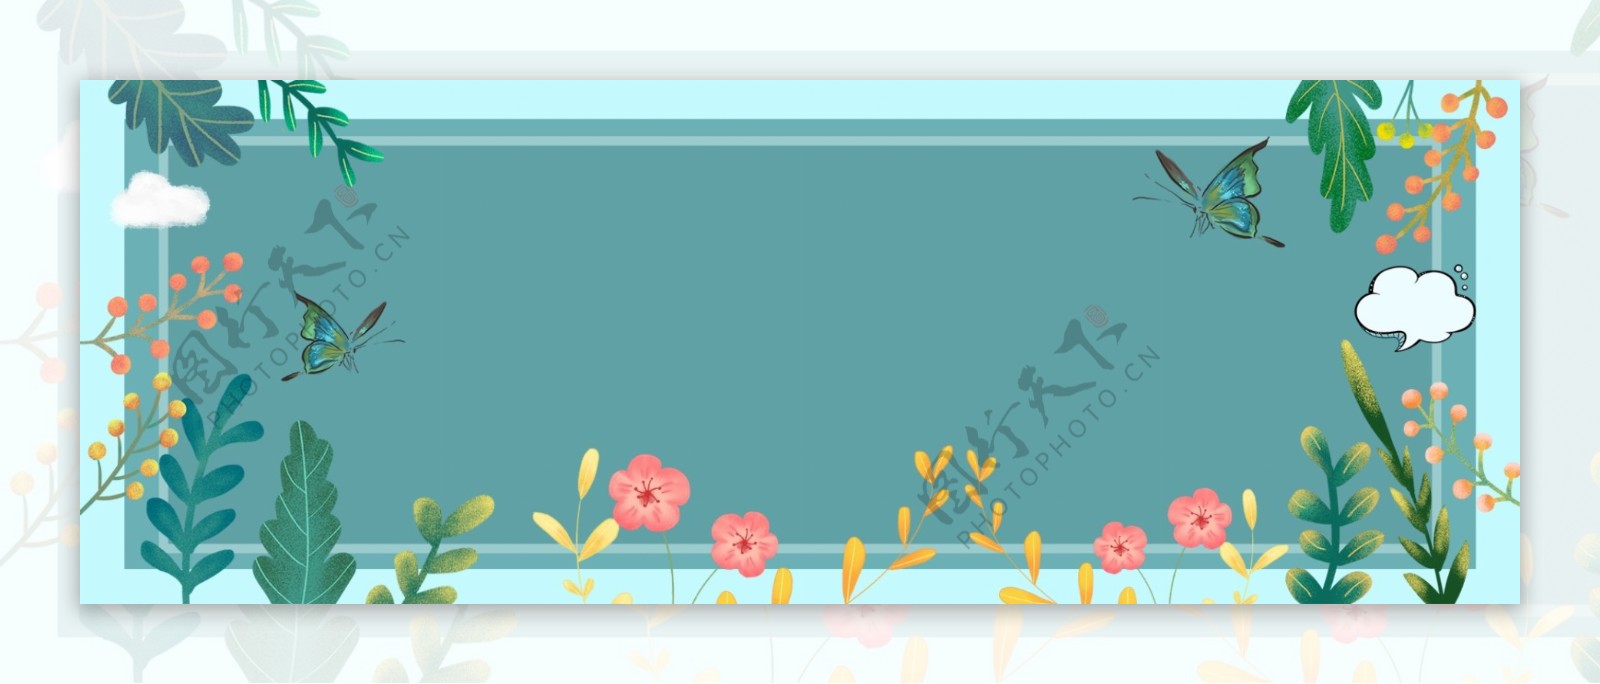 春季花朵边框化妆品海报背景